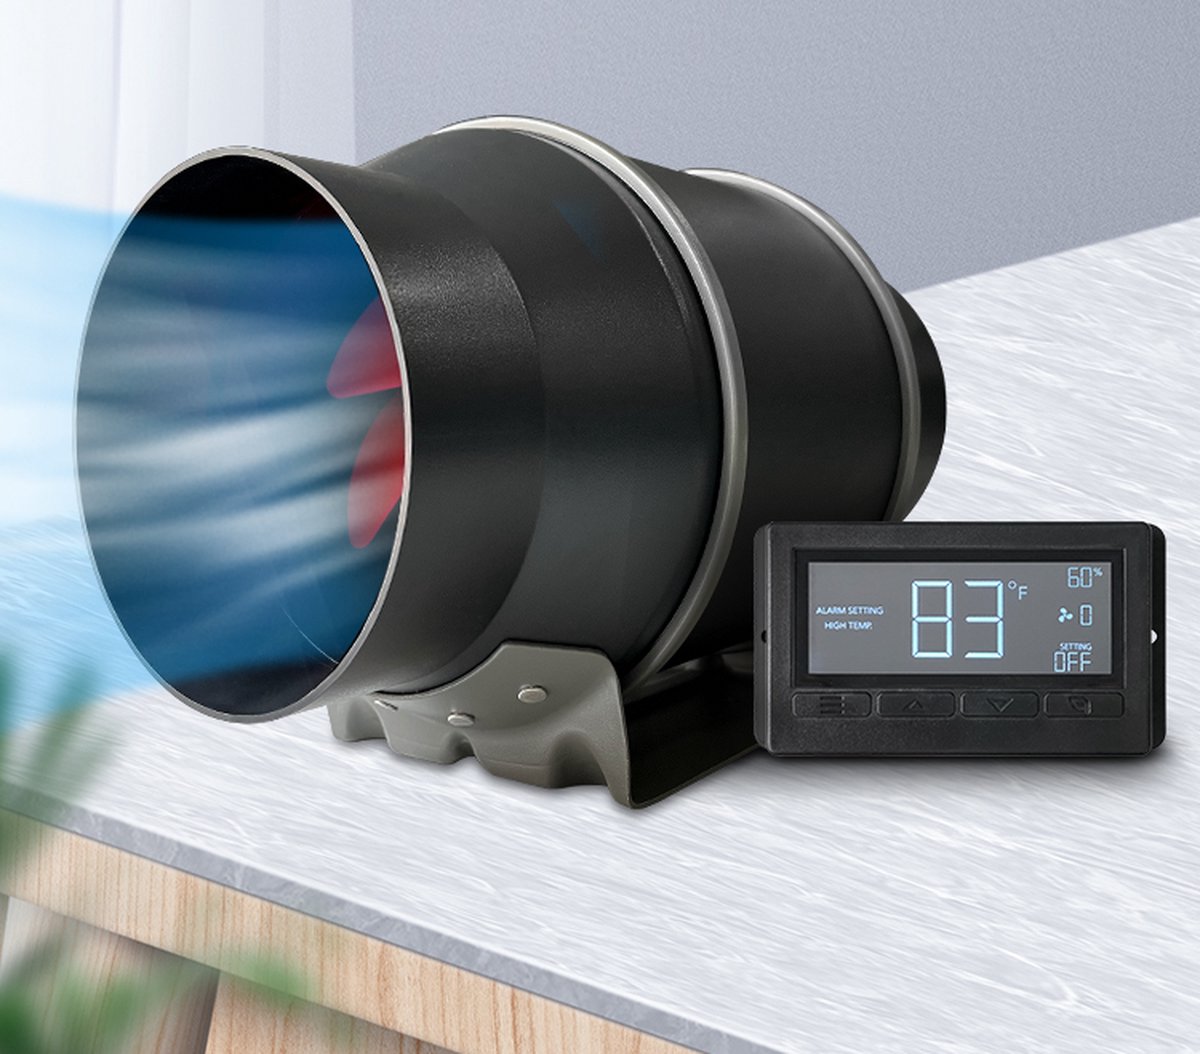 6 inch Kanaal Ventilator, Duct Fan , Kanaalventilator - Kas Ventilatie Systeem met digitale display, temperatuur en vochtregeling - Inline buisventilator met Thermostaat Controller